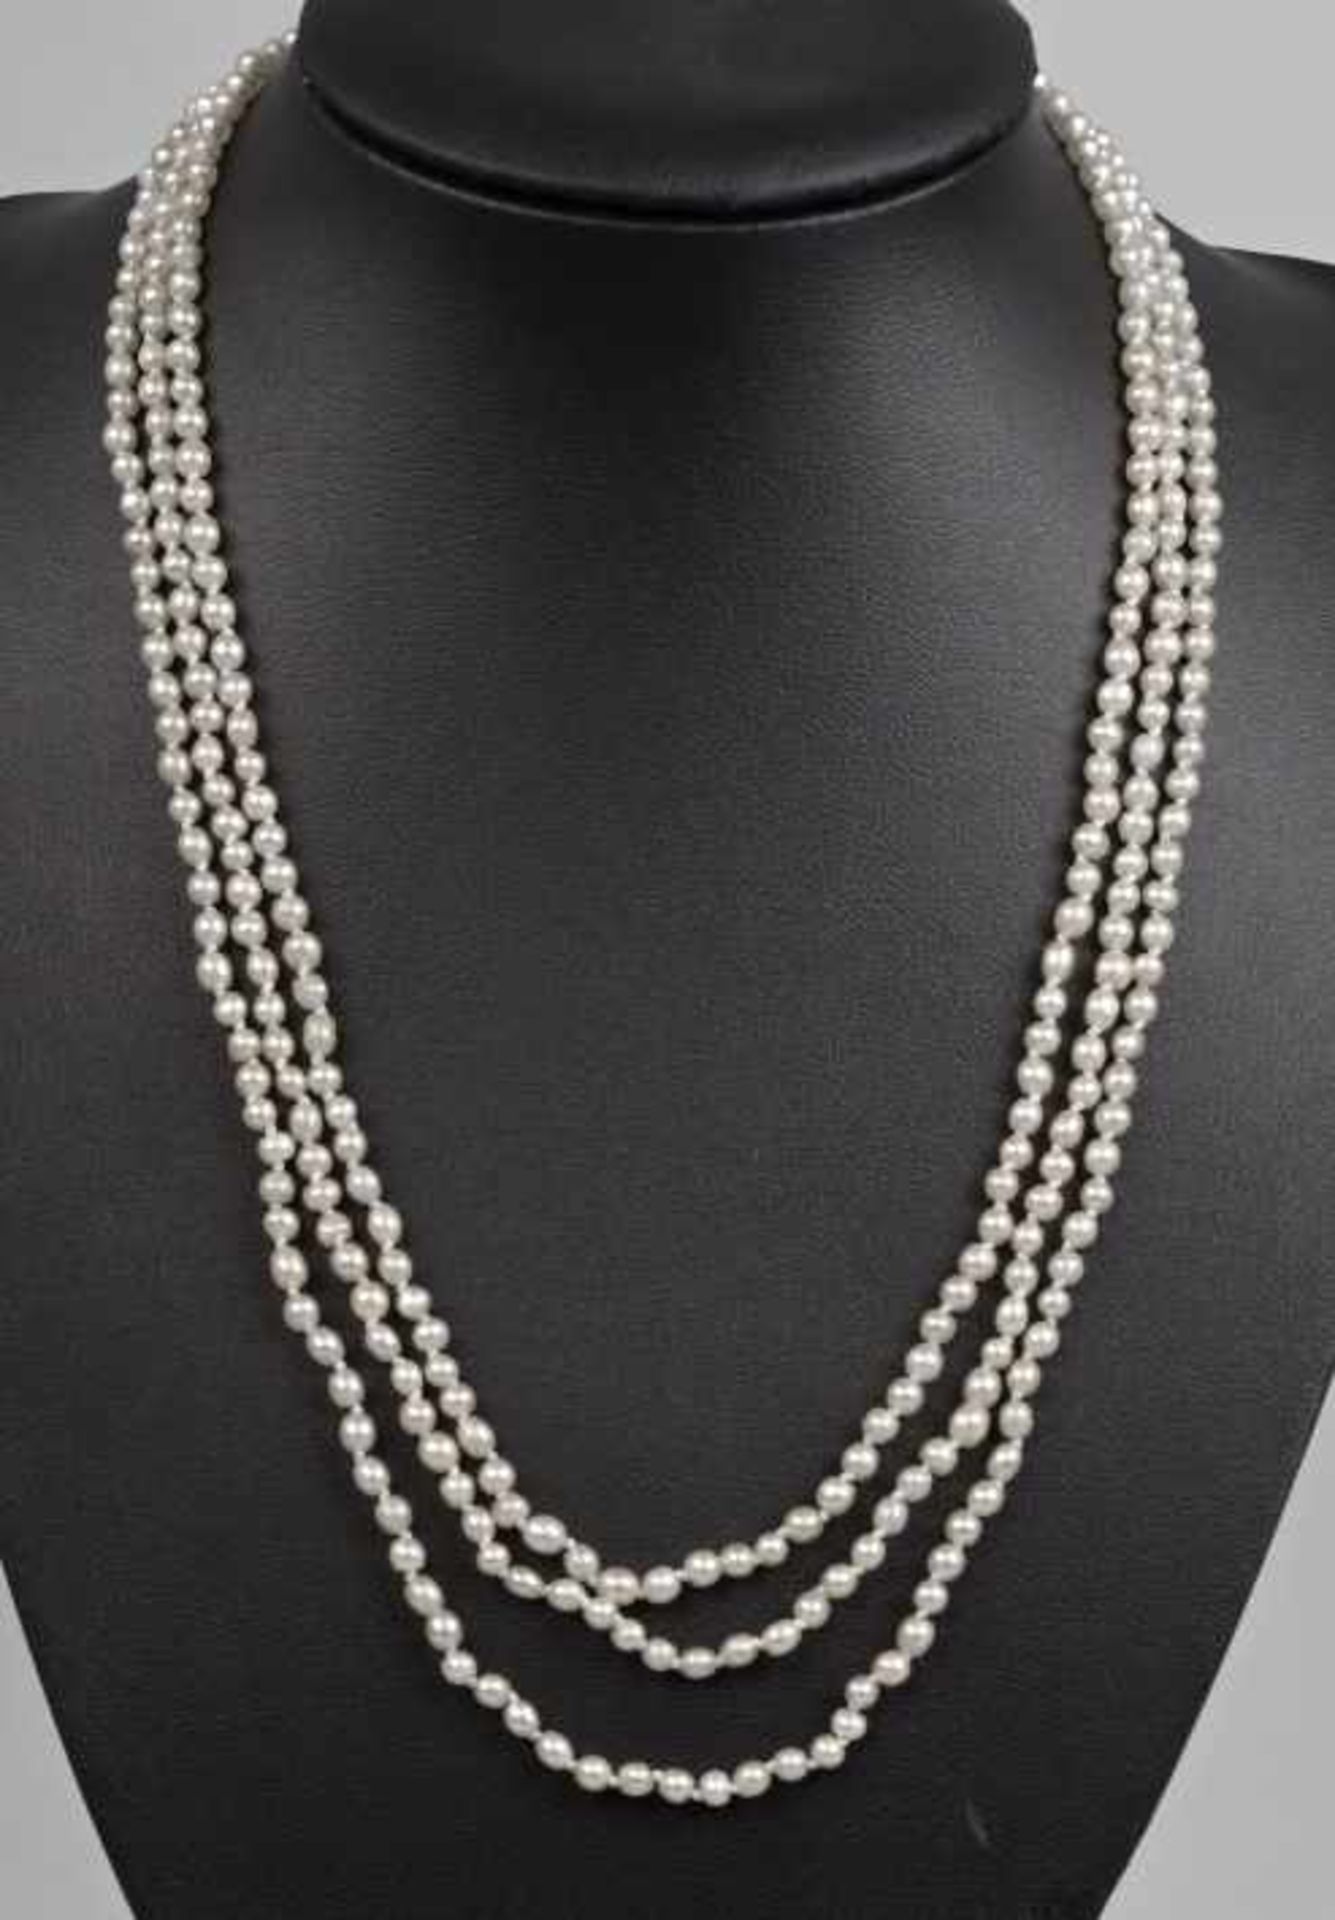 COLLIER Orientperlen in 3 Reihen, 2-4mm, gesamt um 350 Perlen, Kastenschloß mit Emaildekor und - Bild 2 aus 3